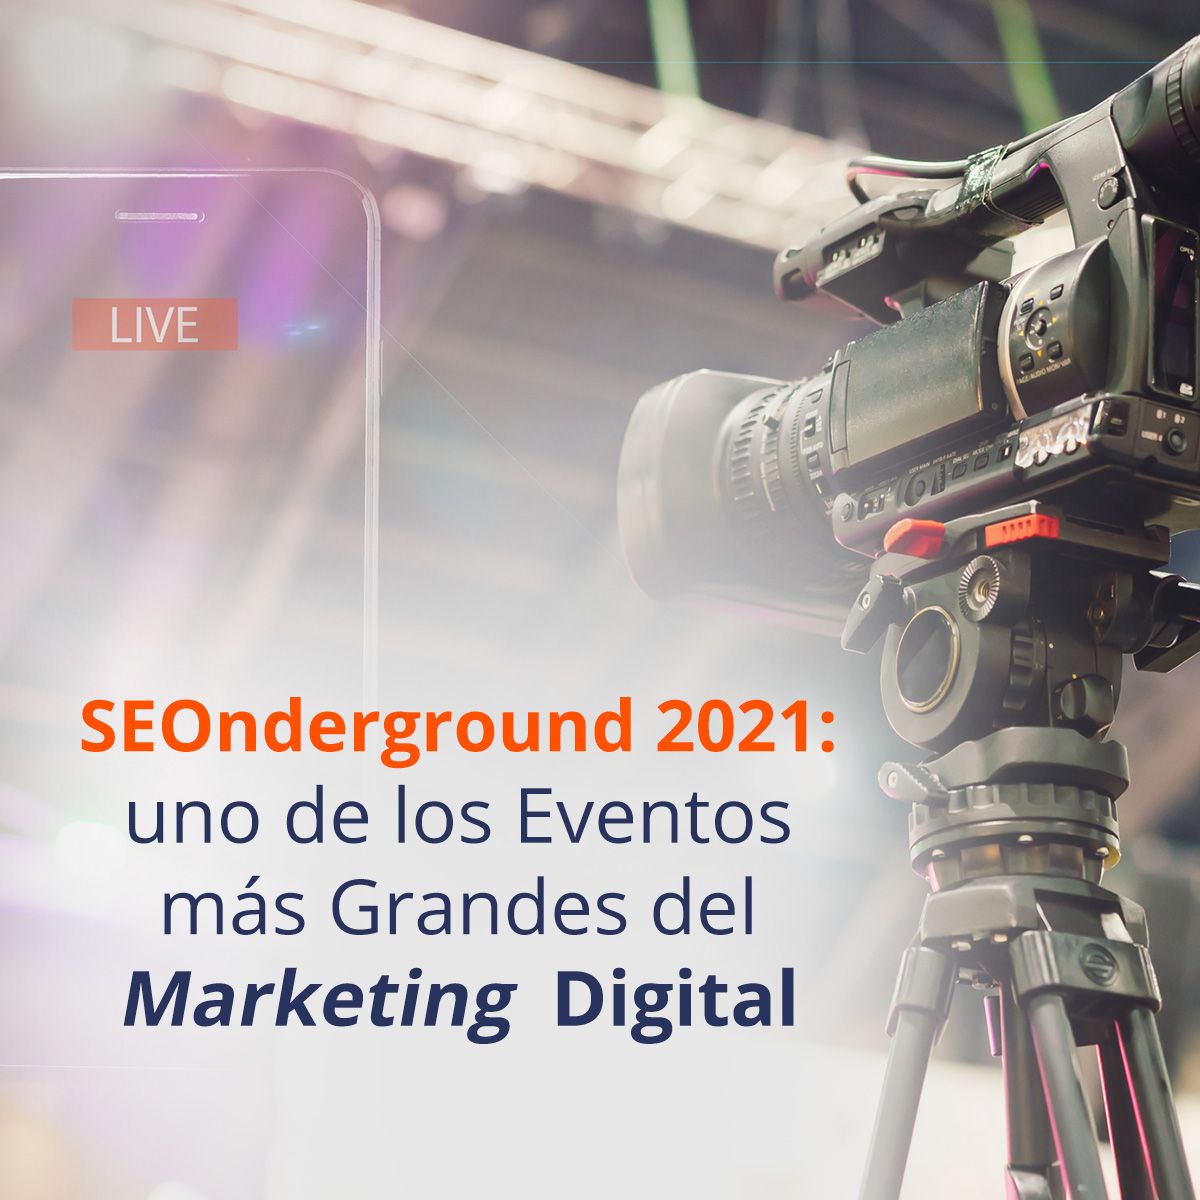 SEOnderground 2021: uno de los Eventos más Grandes del Marketing Digital